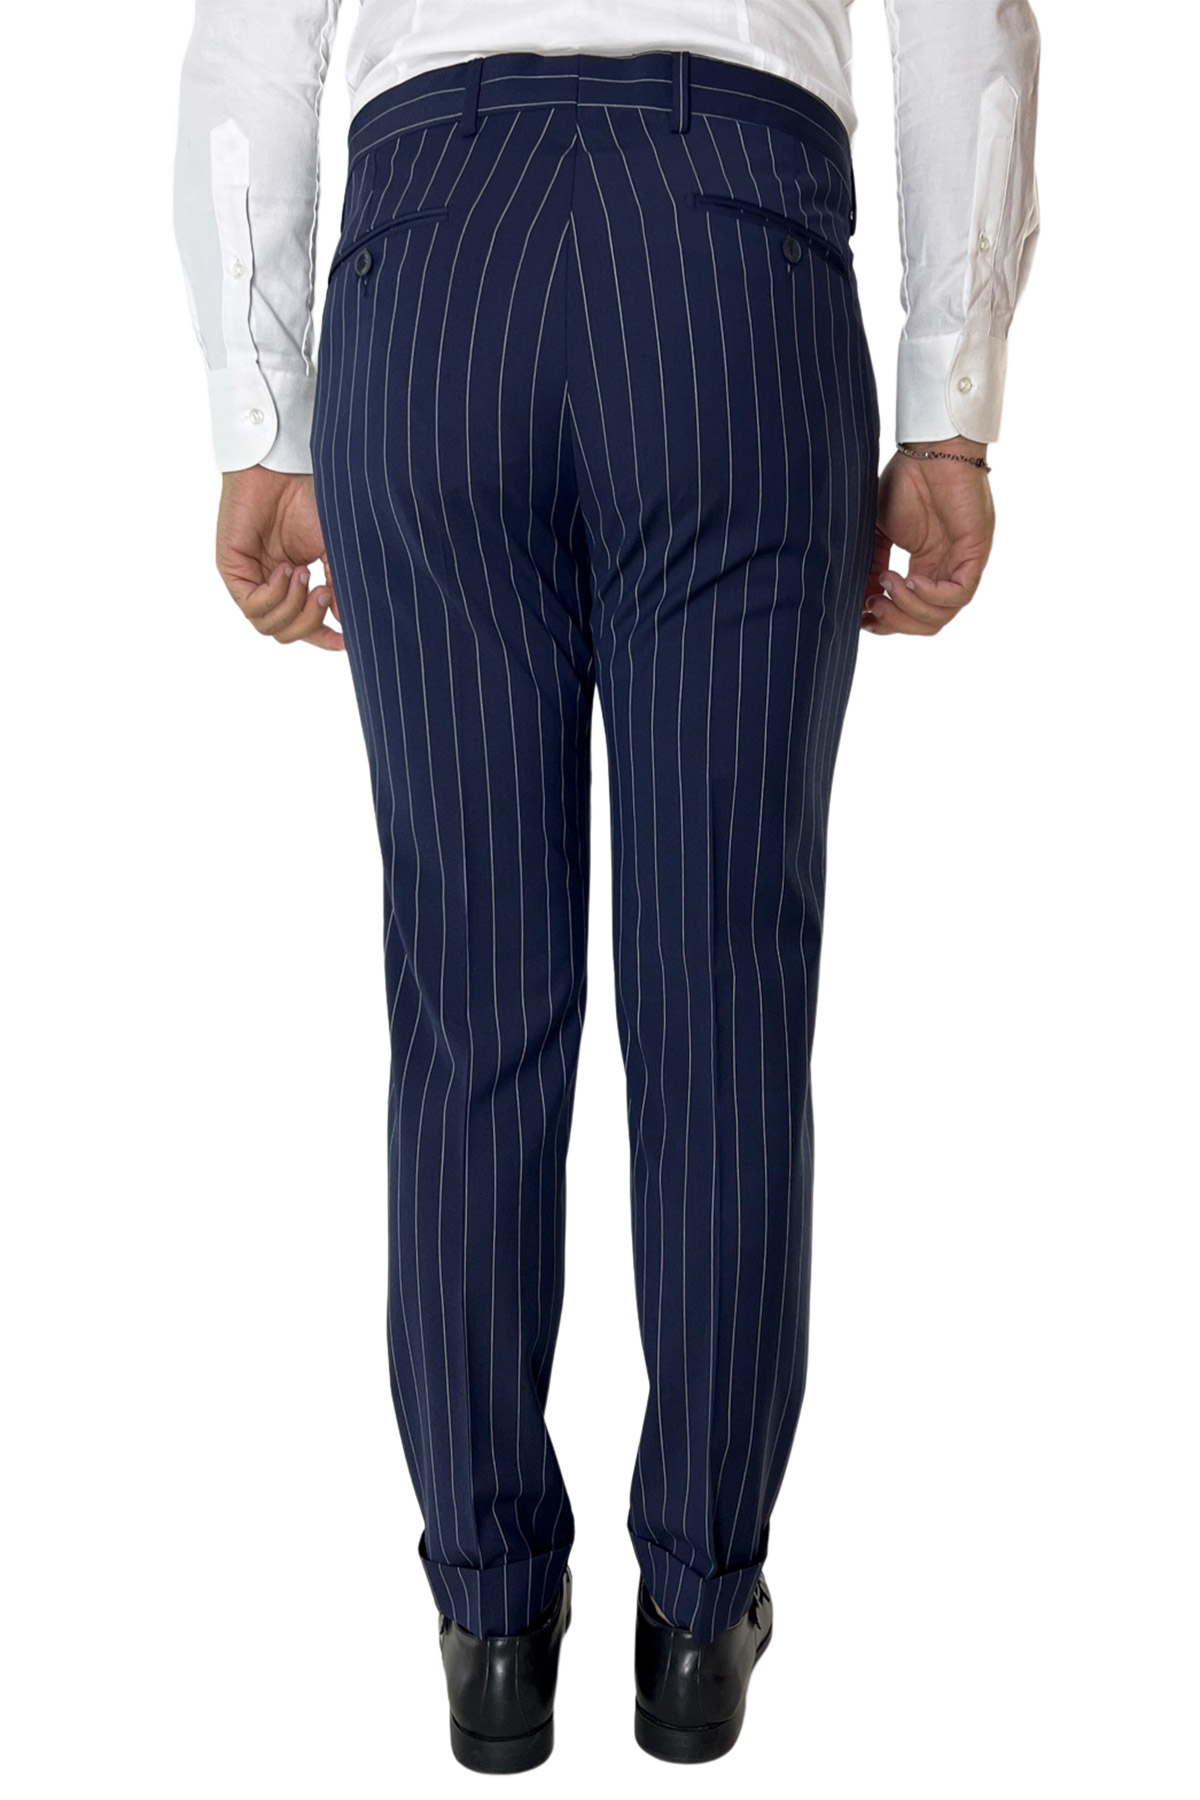 Abito uomo monopetto gessato Navy blu fresco lana mista Rever a lancia 13cm con pantalone una pinces vestibilità slim